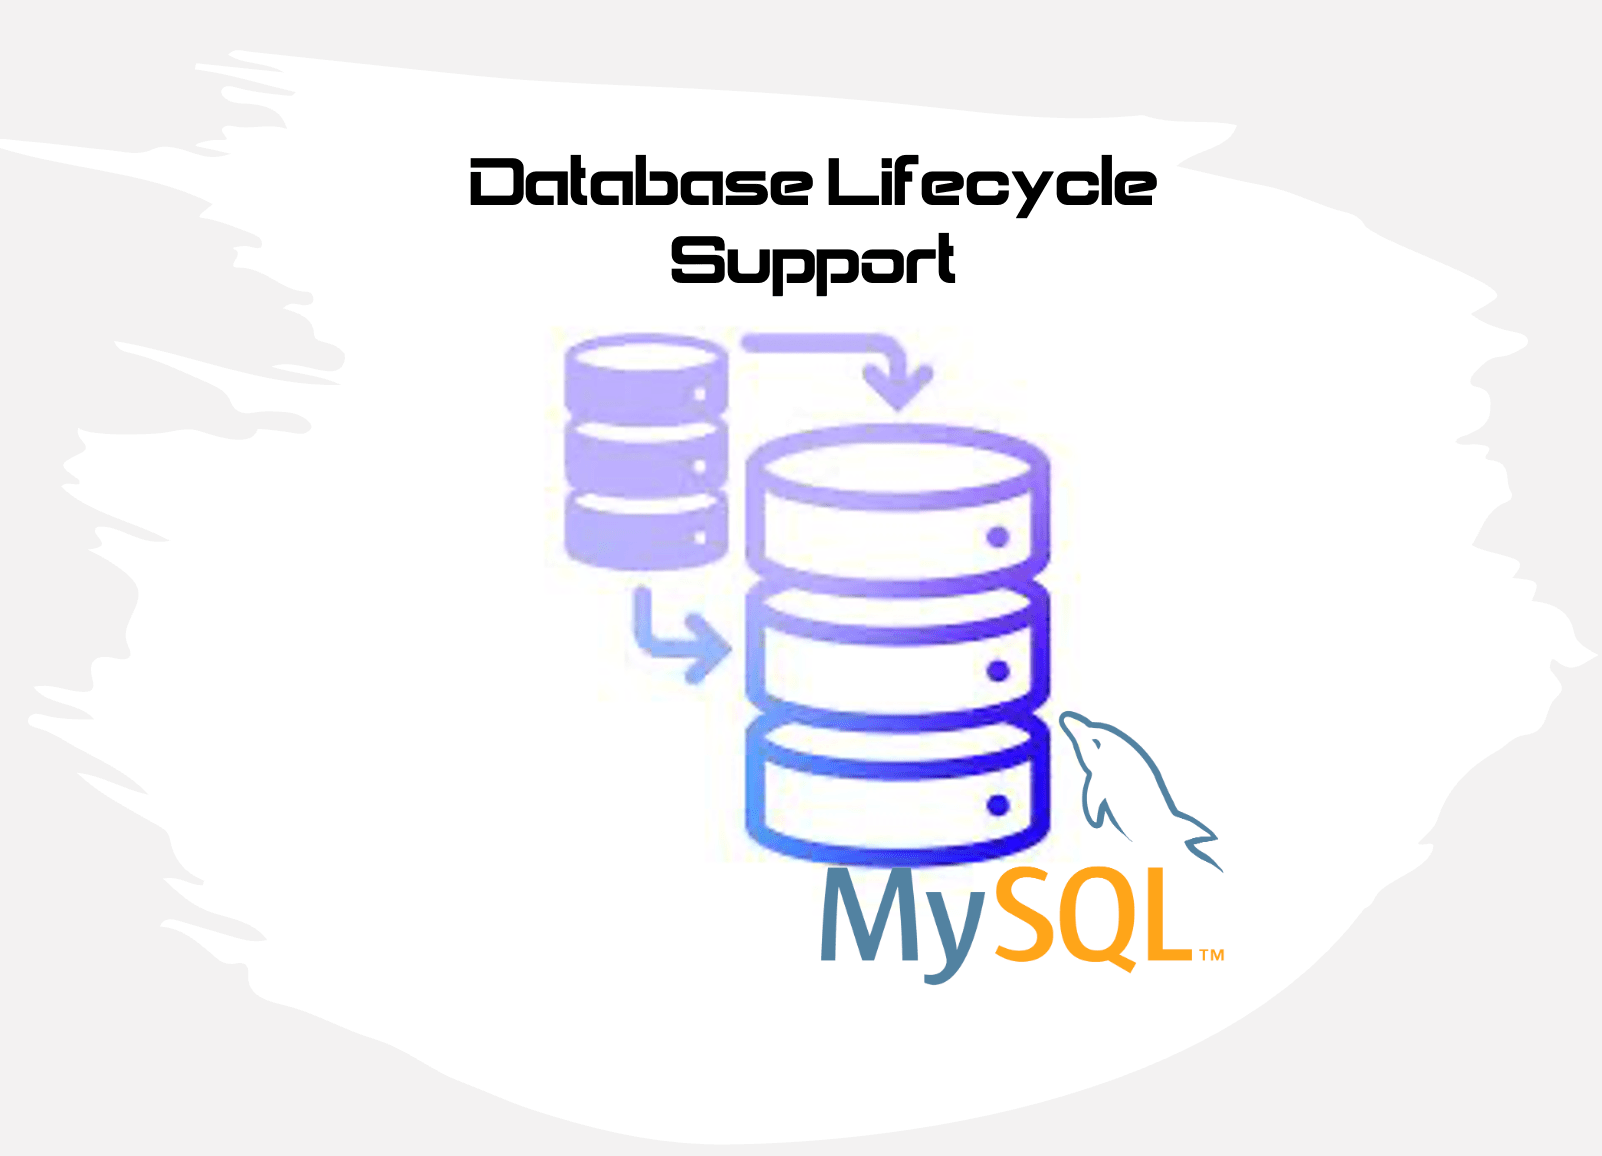 MySQL database lifecycle support